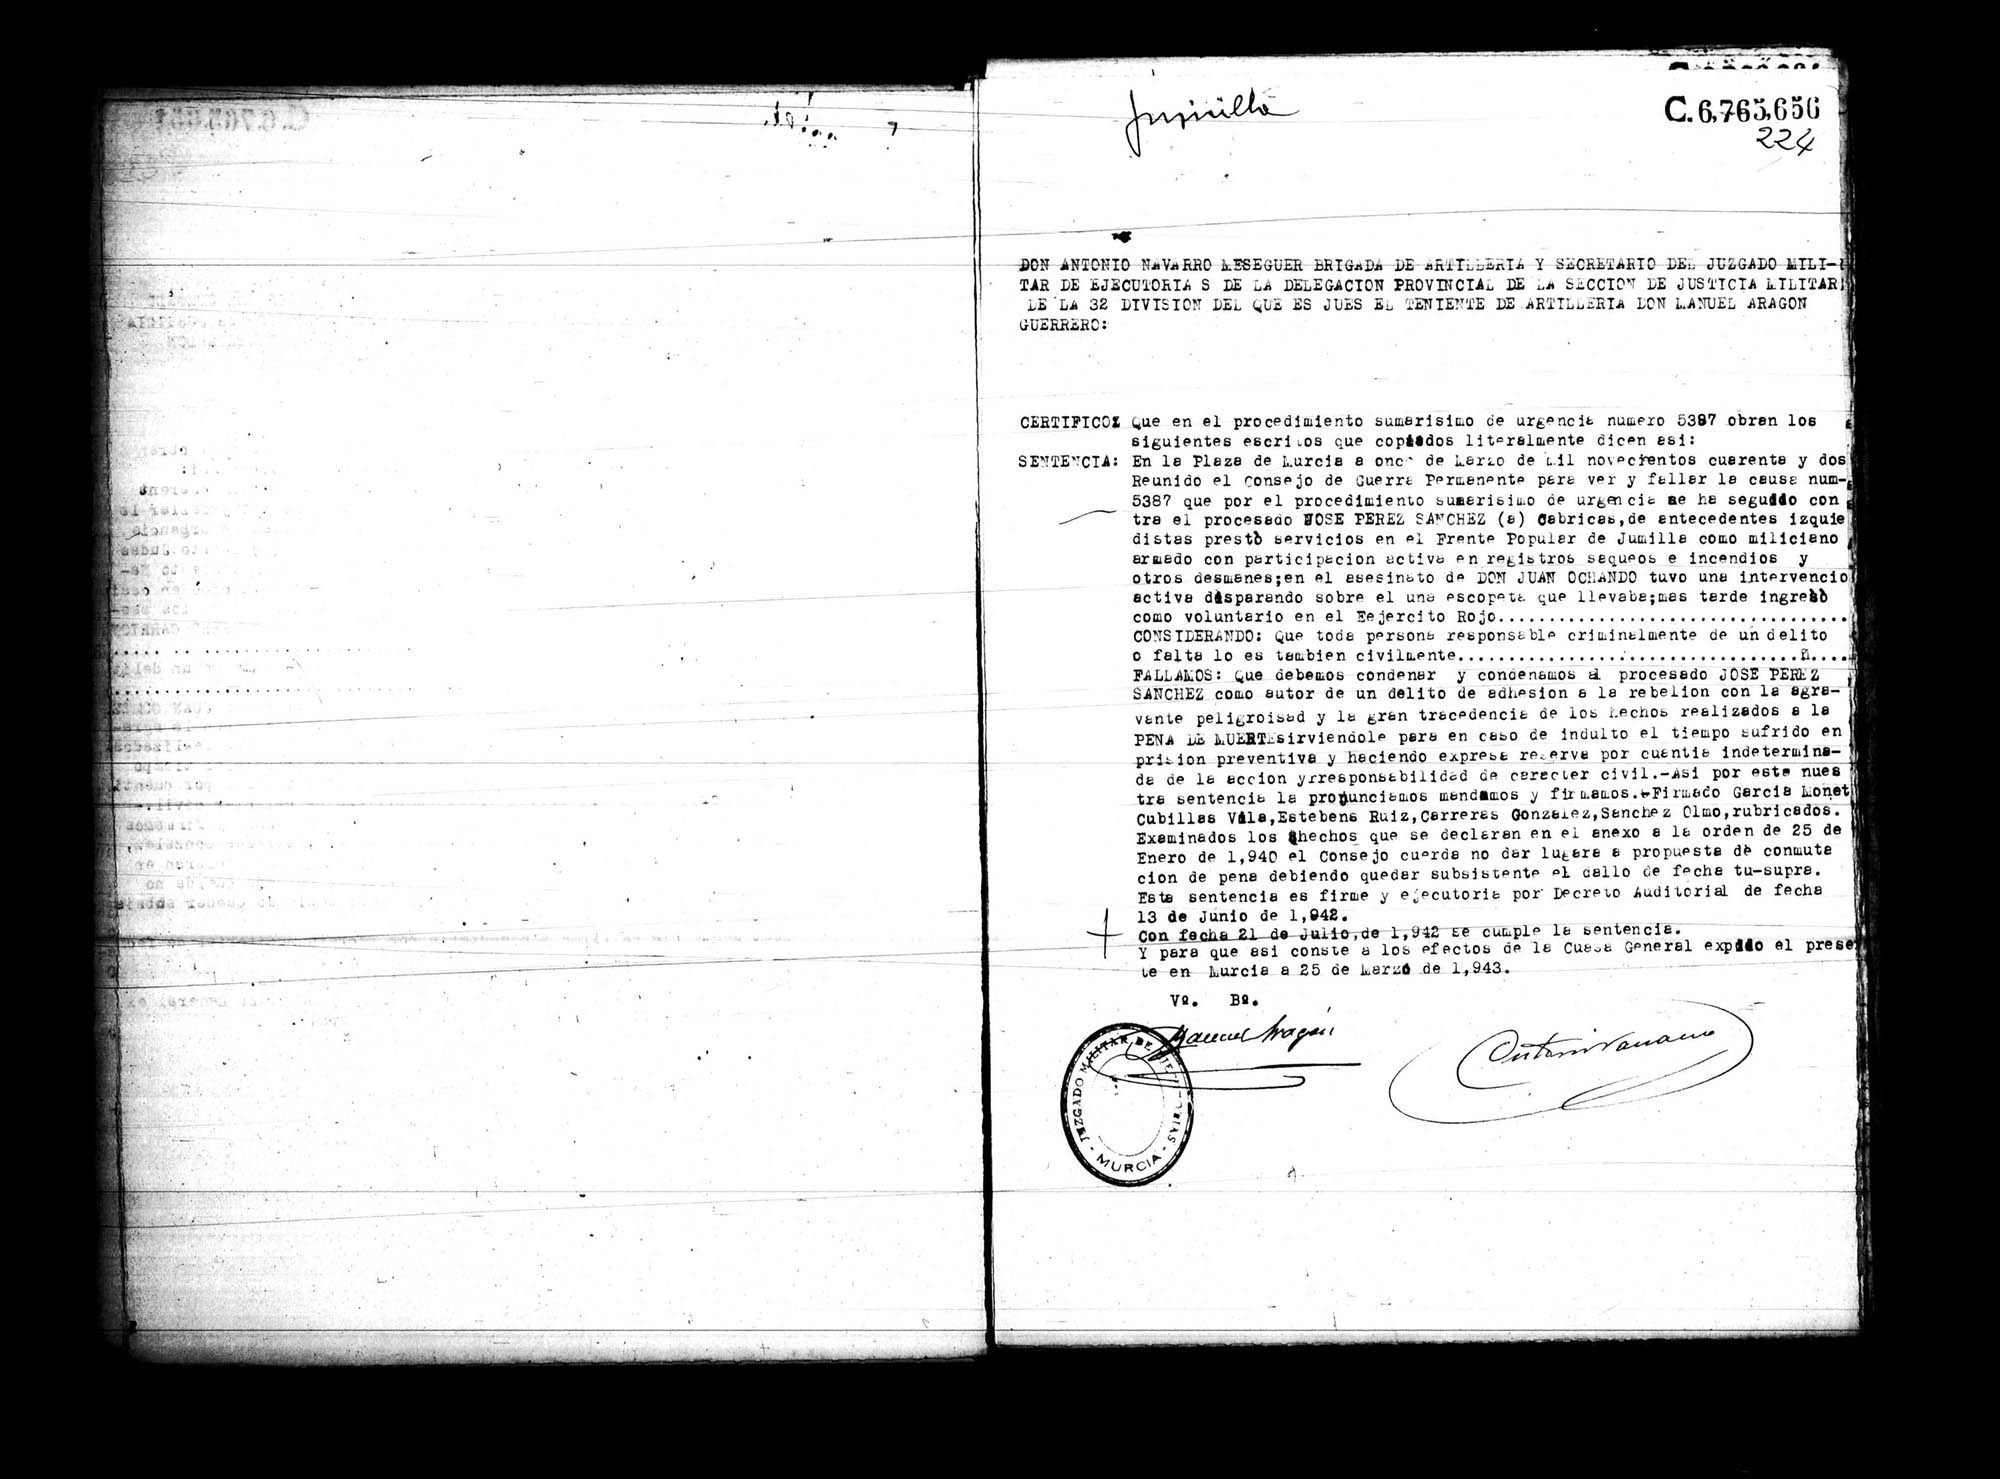 Certificado de la sentencia pronunciada contra José Pérez Sánchez, causa 5387, el 11 de marzo de 1942 en Murcia.